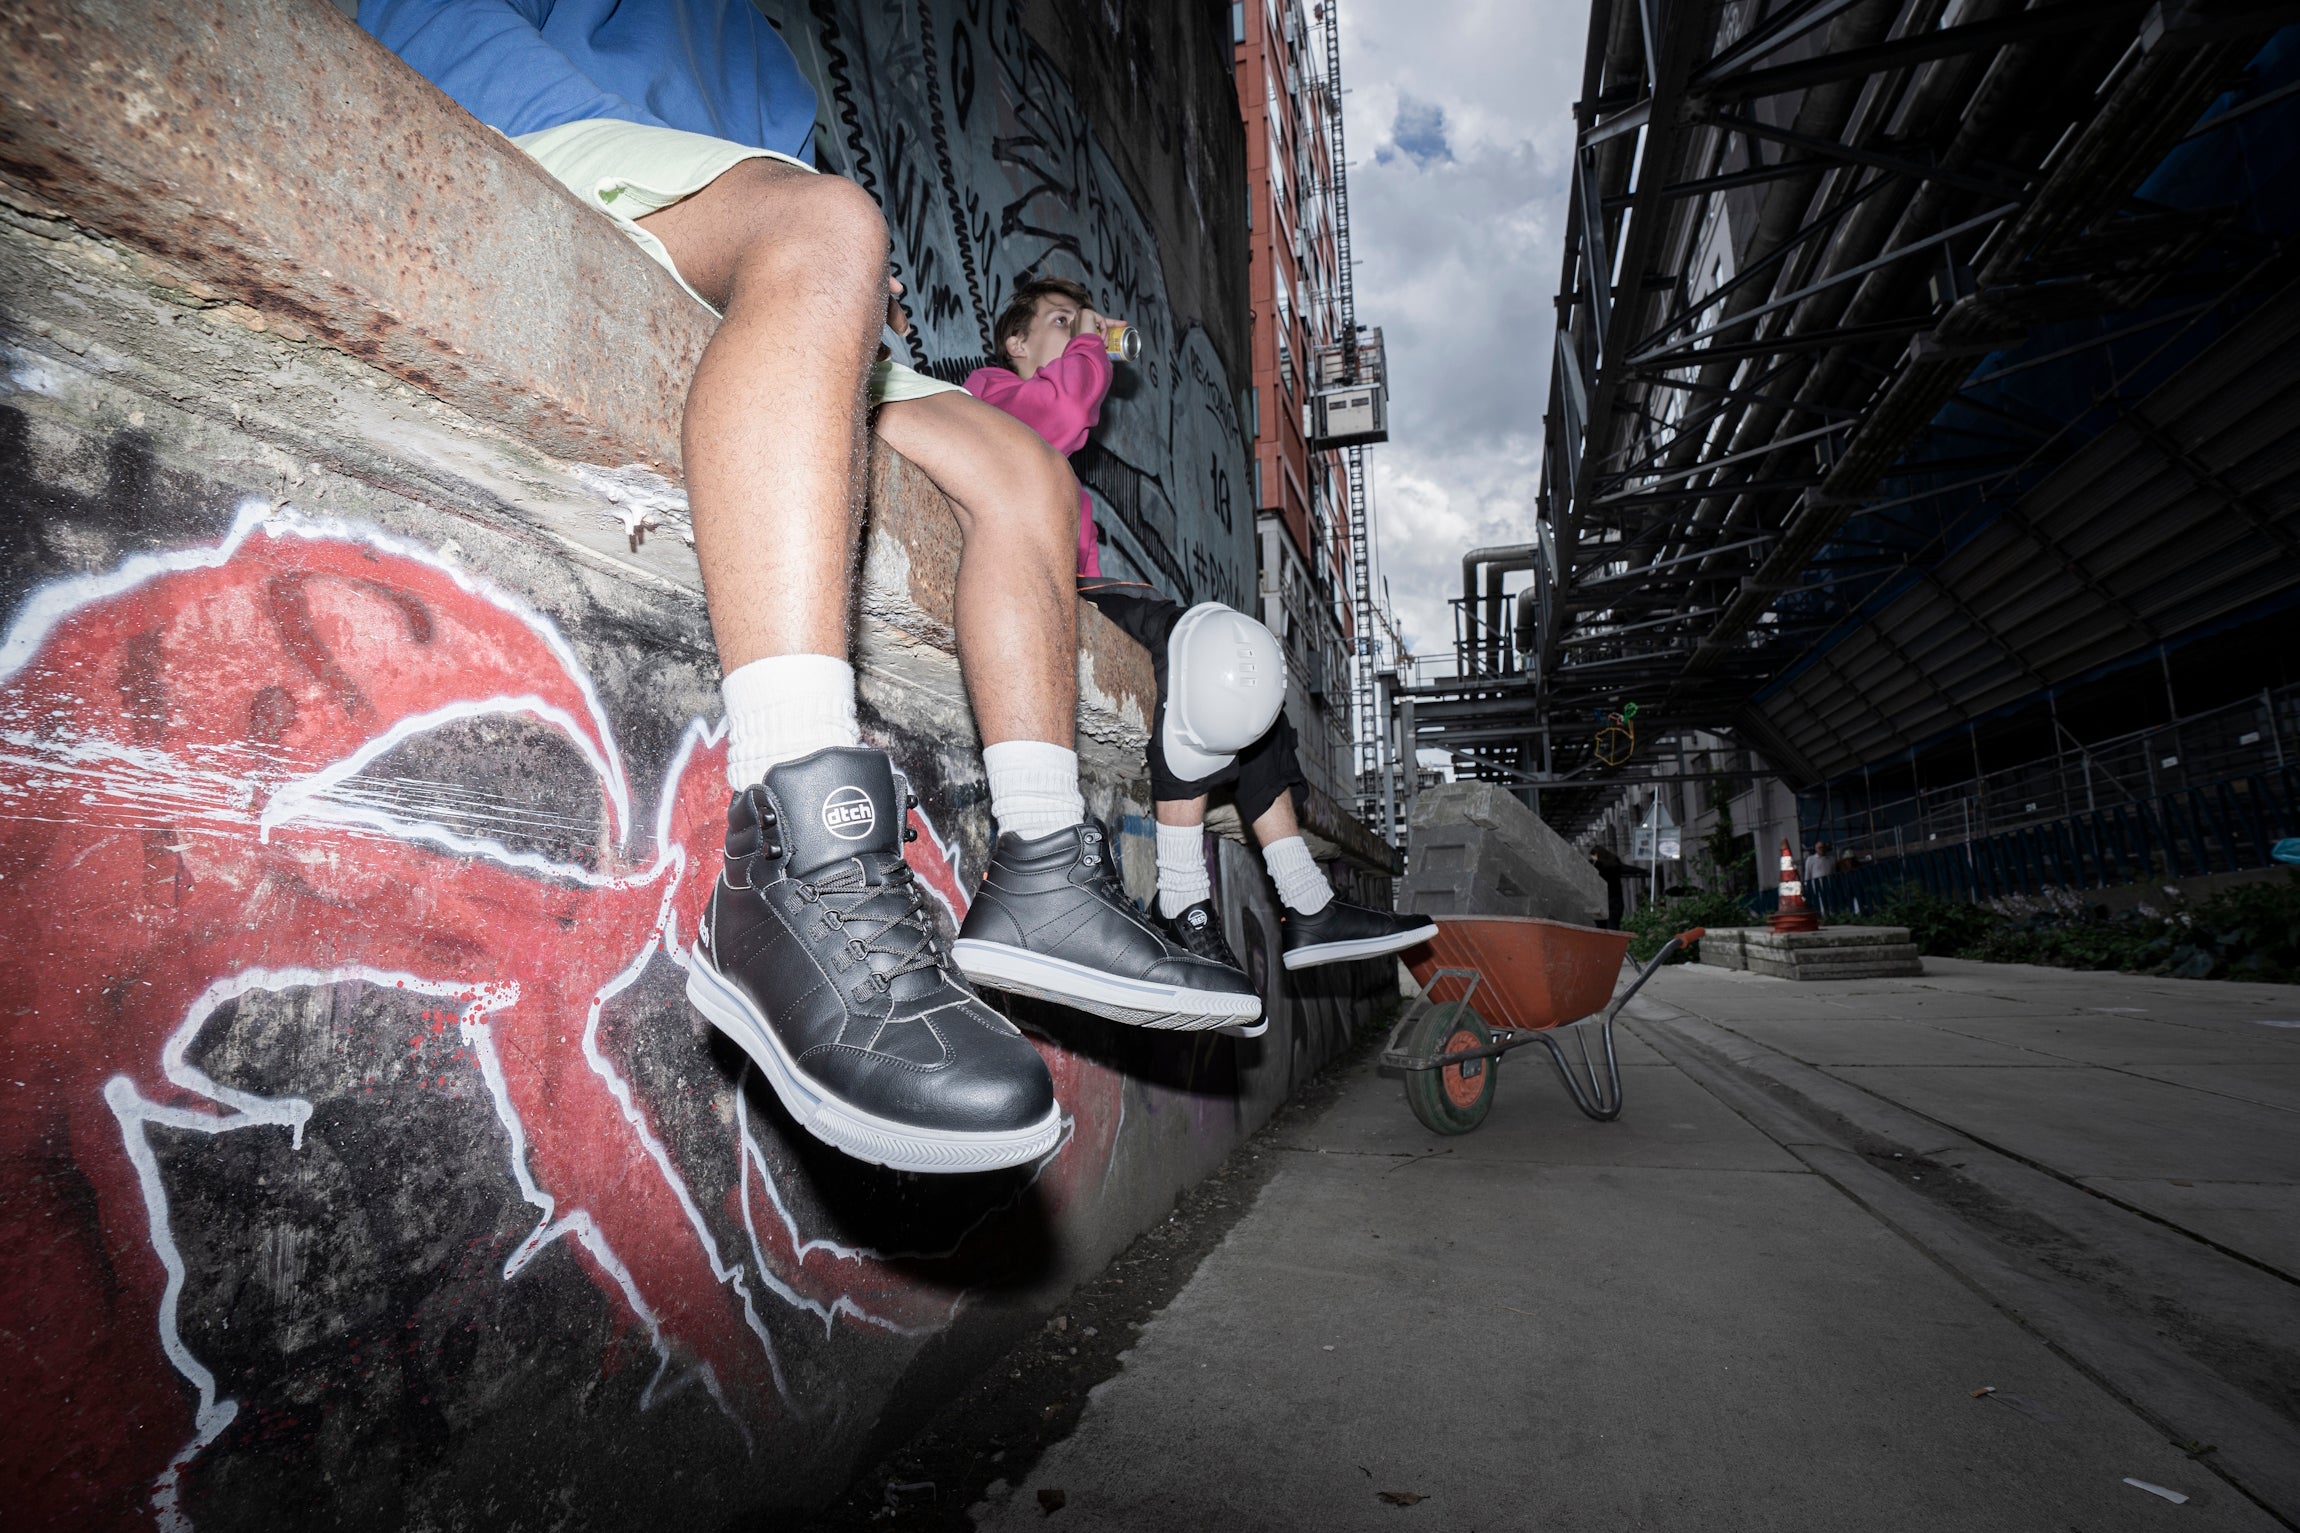 S3 gecertificeerde hippe safety sneakers van DTCH op bouwplaats gedragen door jongeren.